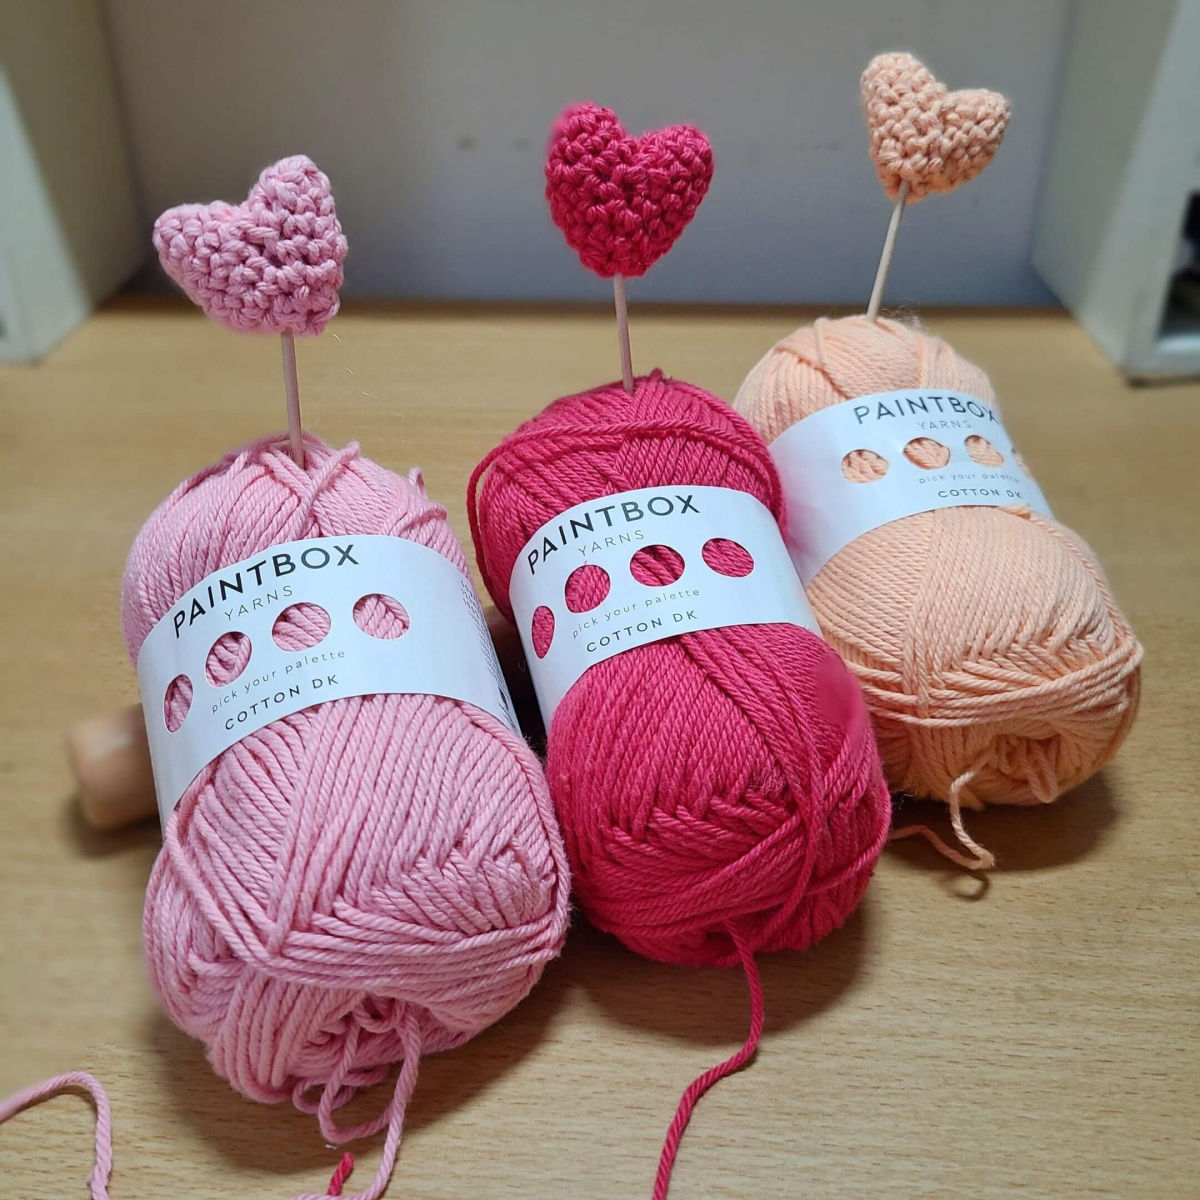 Heart Crochet Pattern using Paintbox Cotton DK yarn